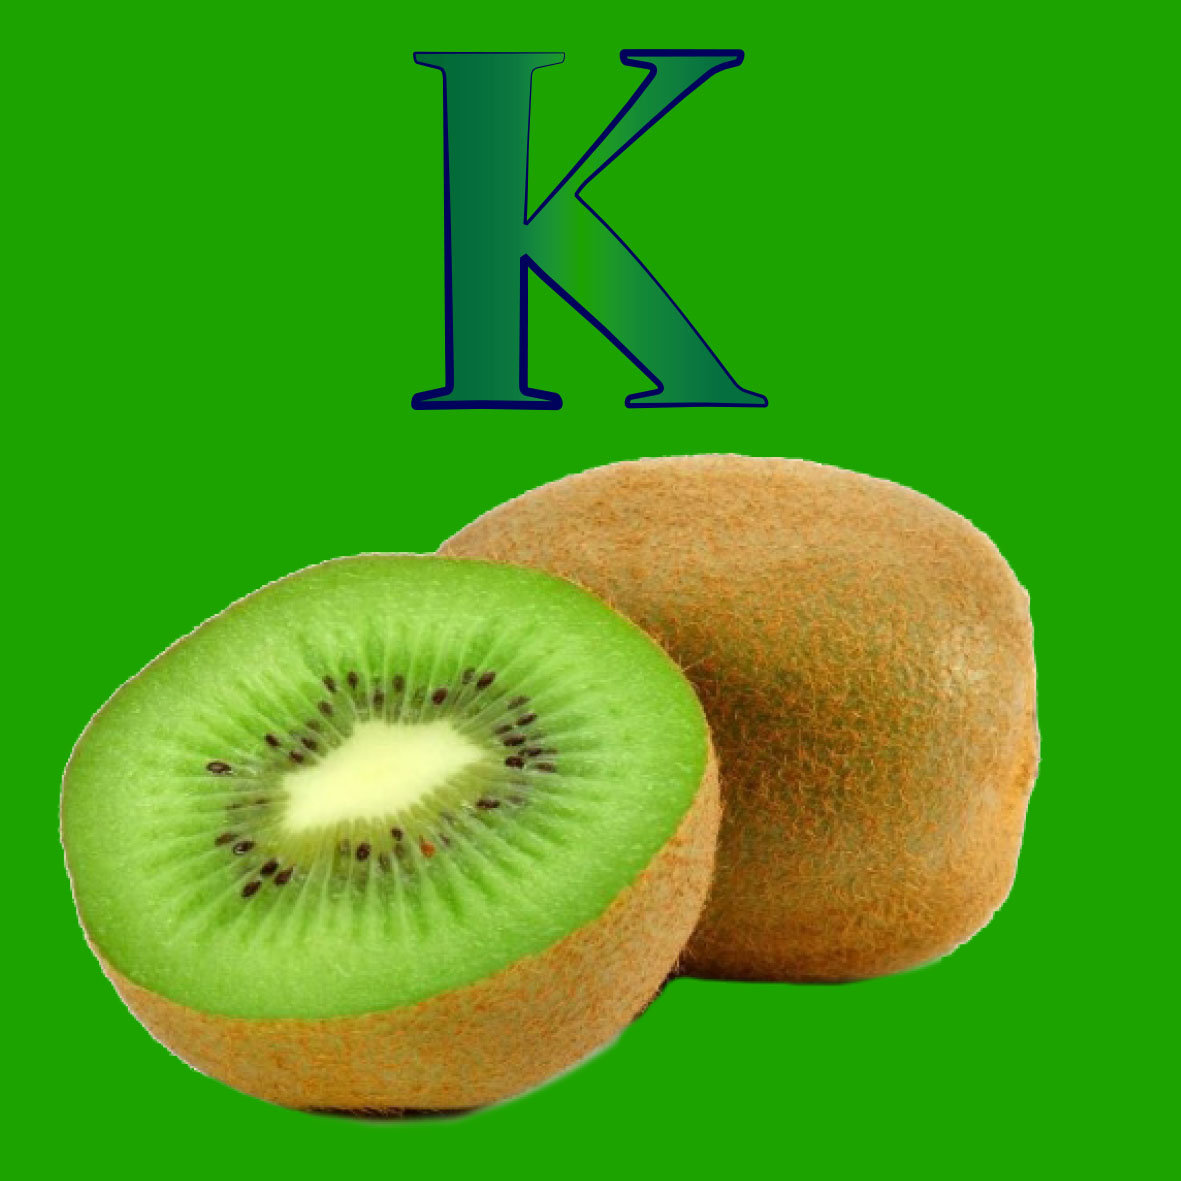 imagen de un kiwi, es una fruta con un sabor agridulce